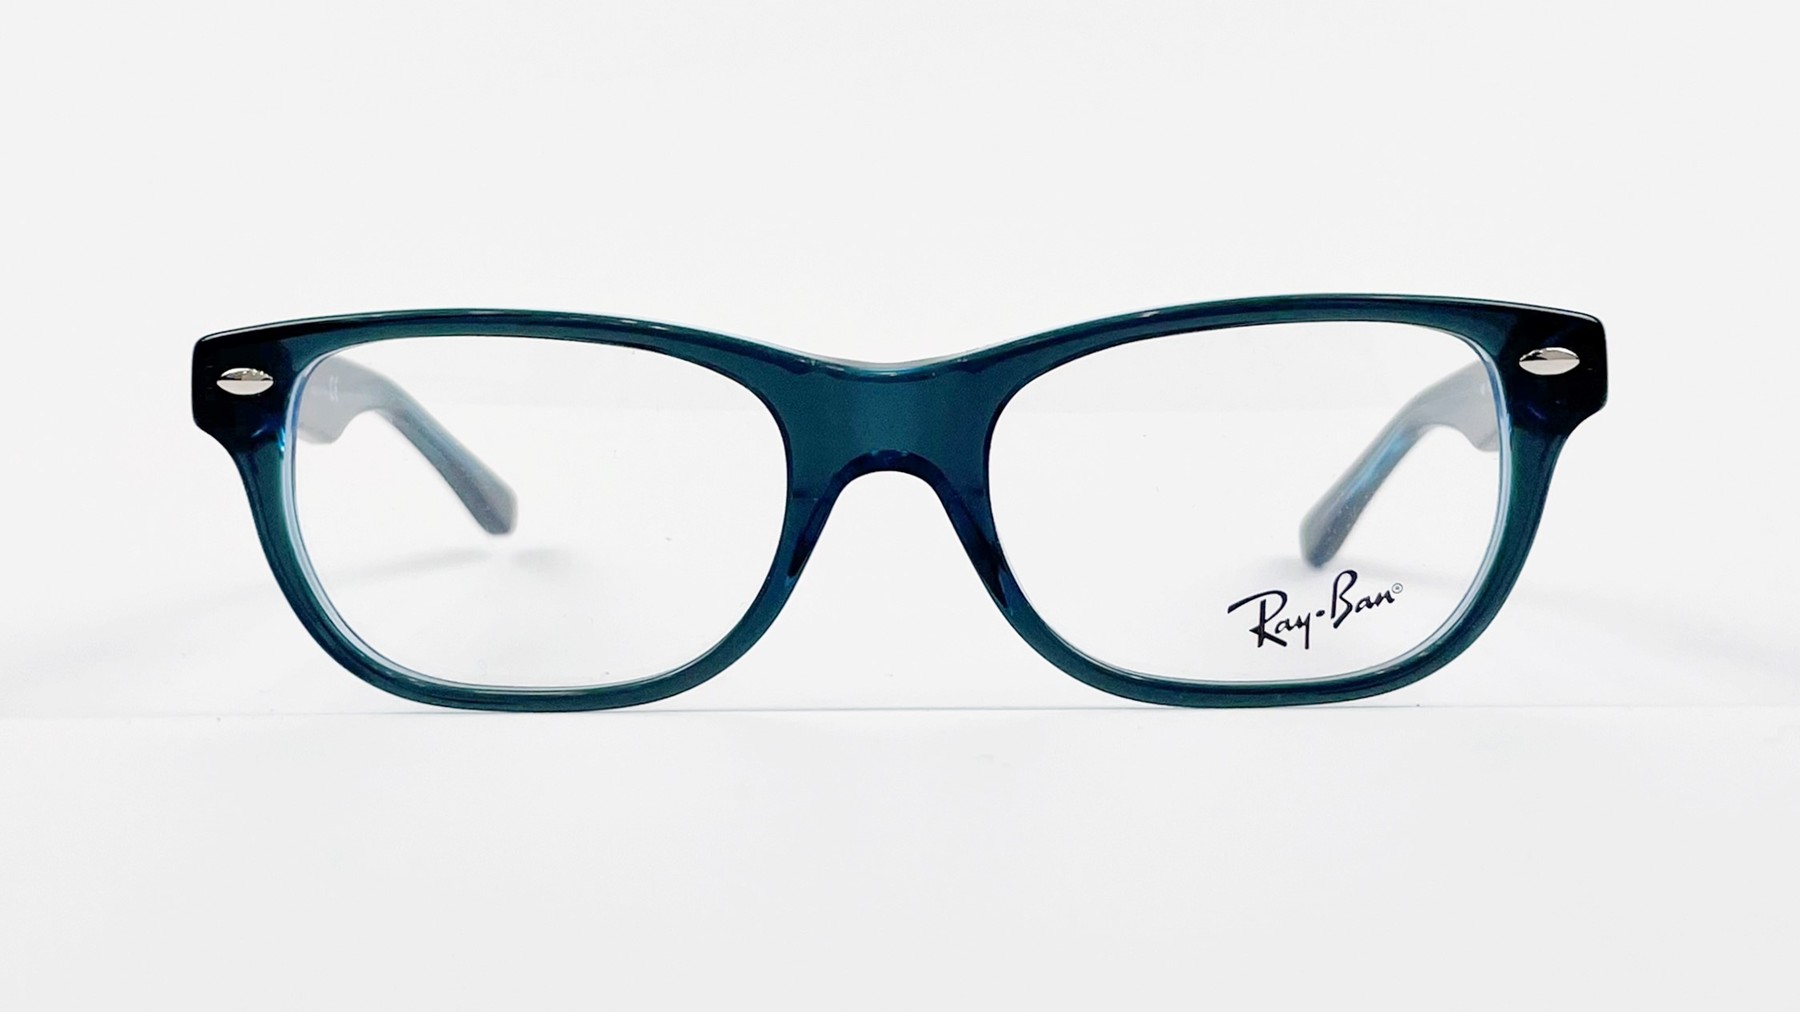 RayBan RB1555 3667, Korean glasses, sunglasses, eyeglasses, glasses